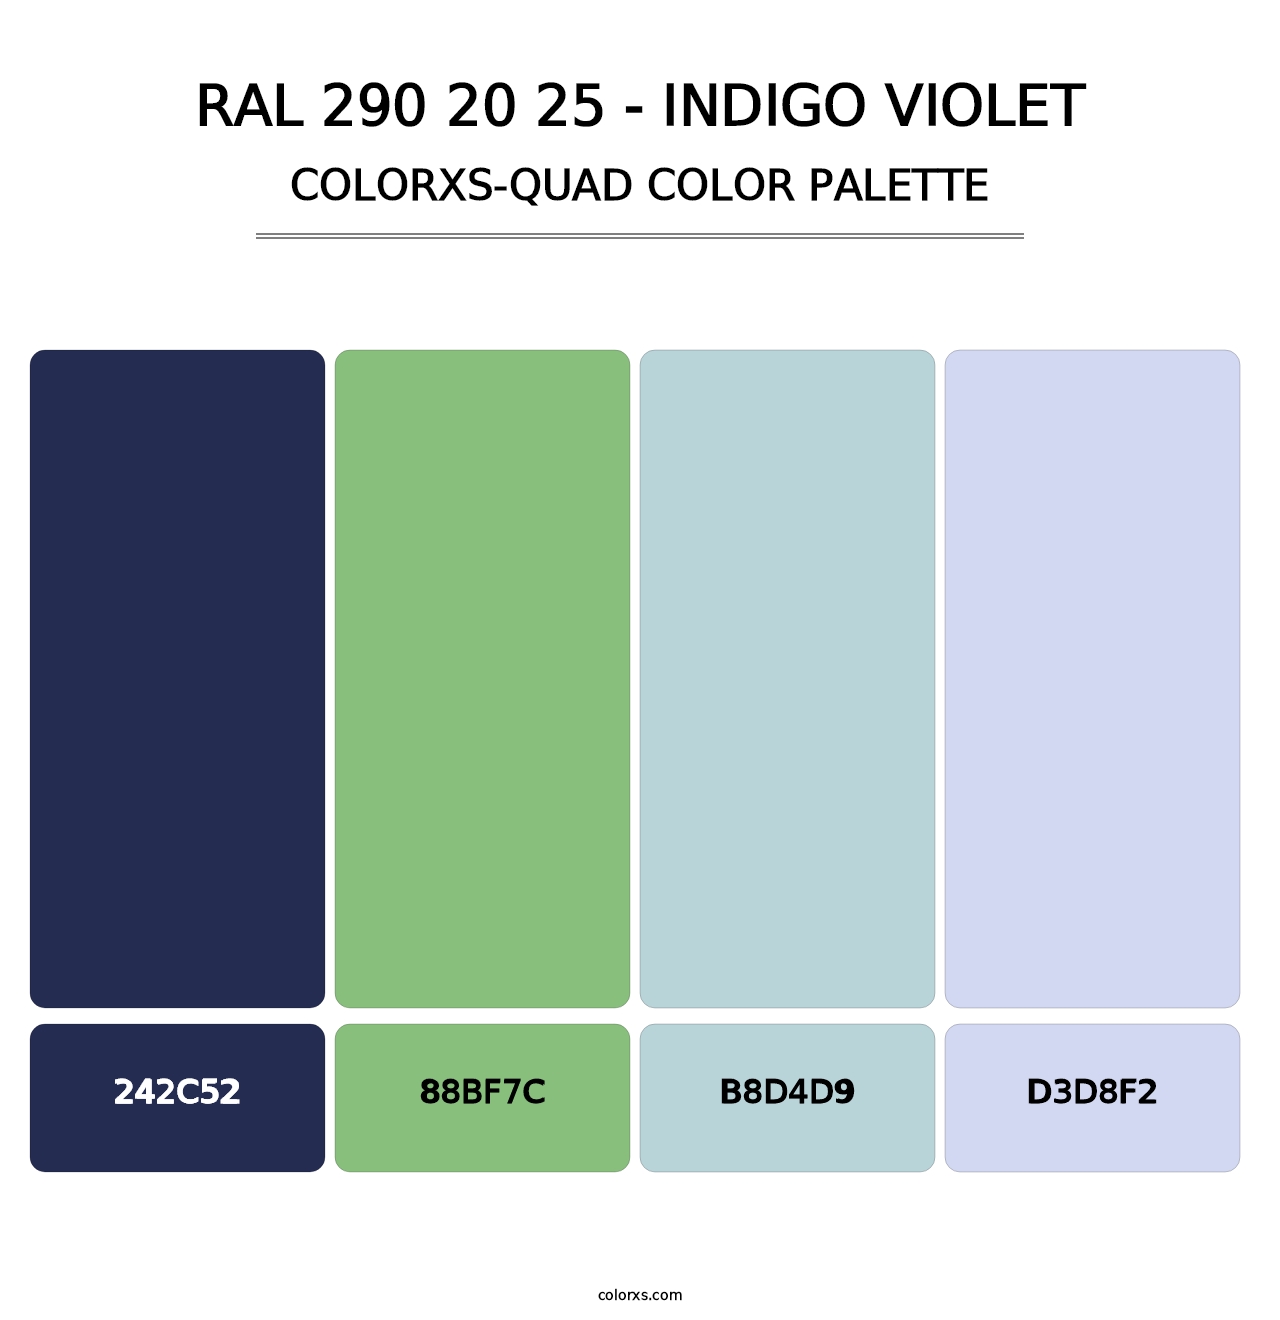 RAL 290 20 25 - Indigo Violet - Colorxs Quad Palette